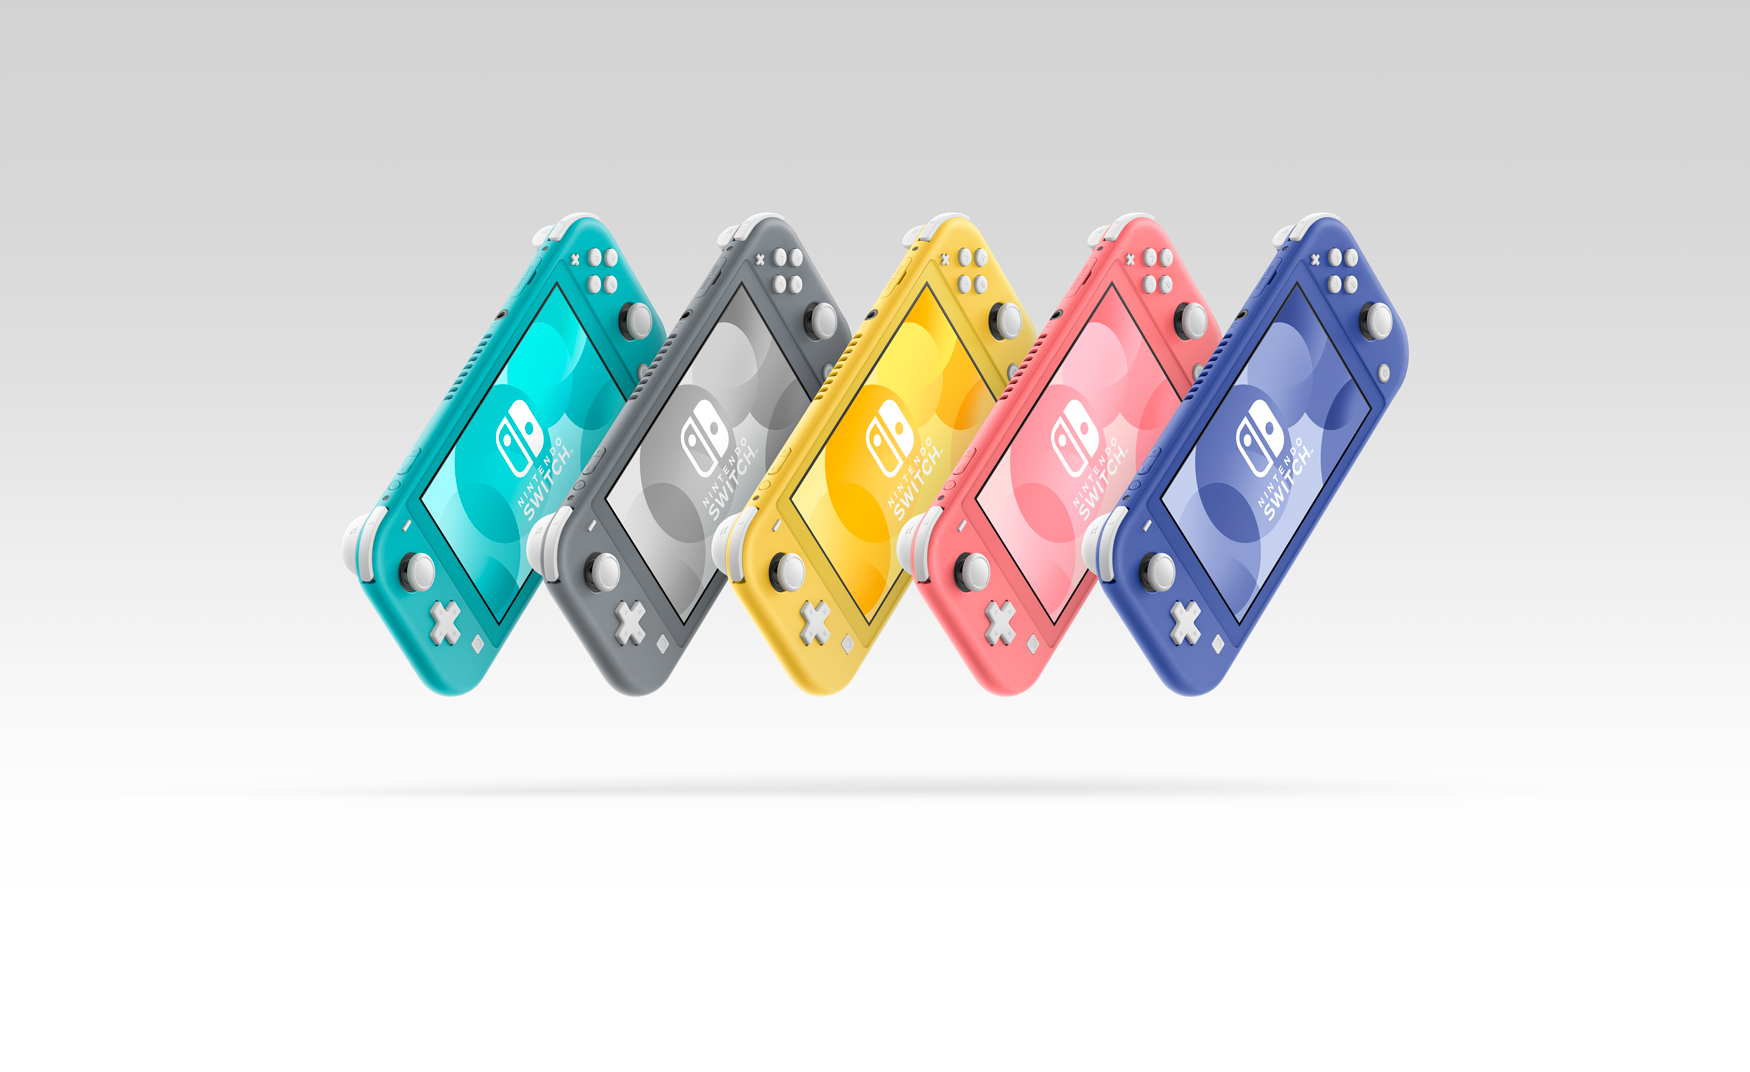 Nintendo Switch Liteの新色「ブルー」モデルが5月21日に発売へ。カラーバリエーションは全5色に